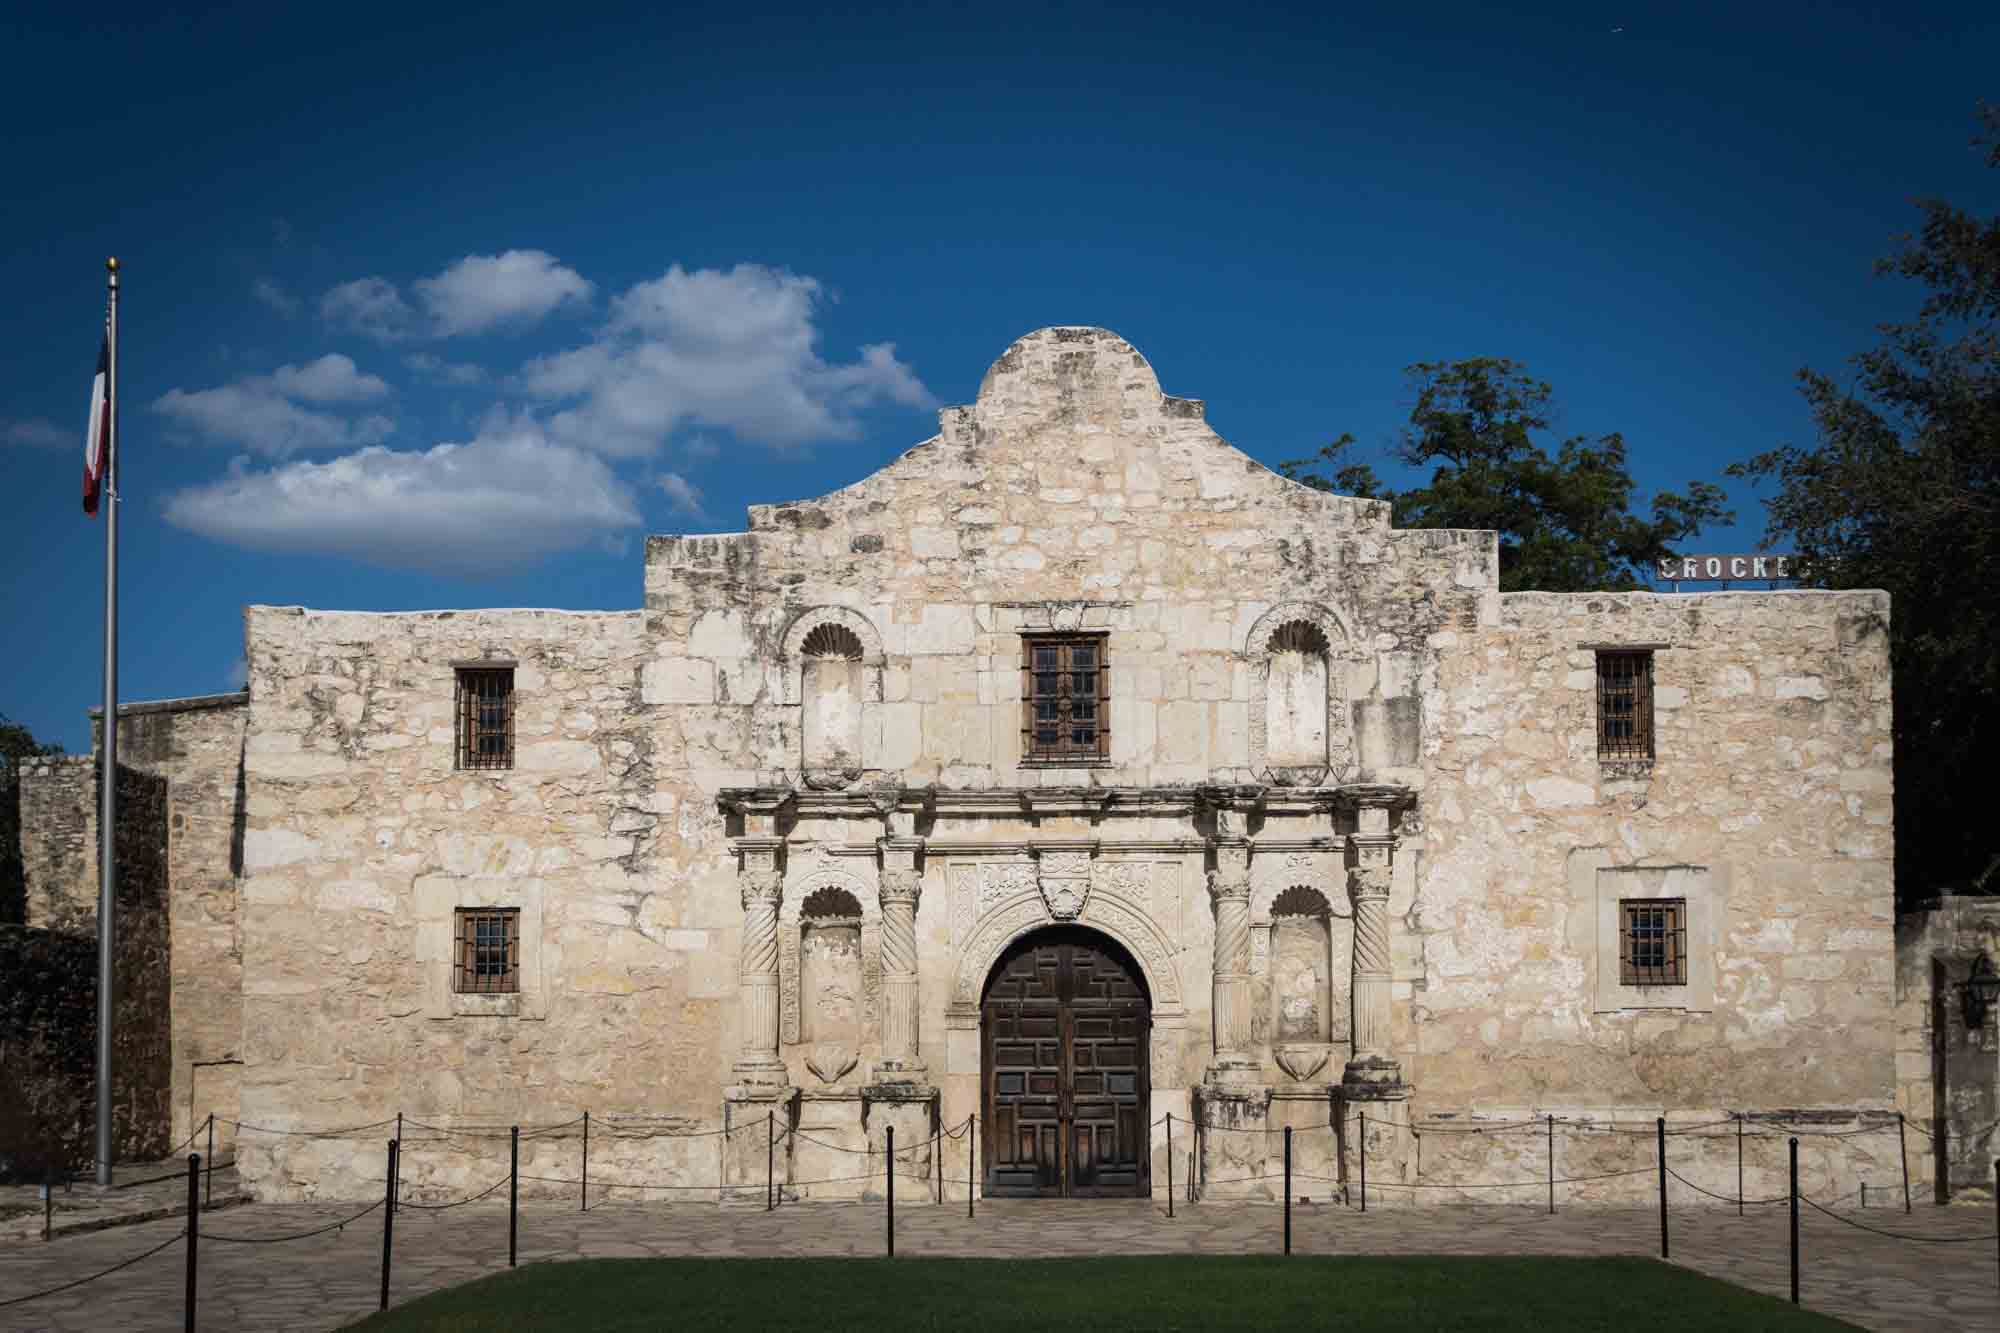 The facade of the Alamo in San Antonio, Texas